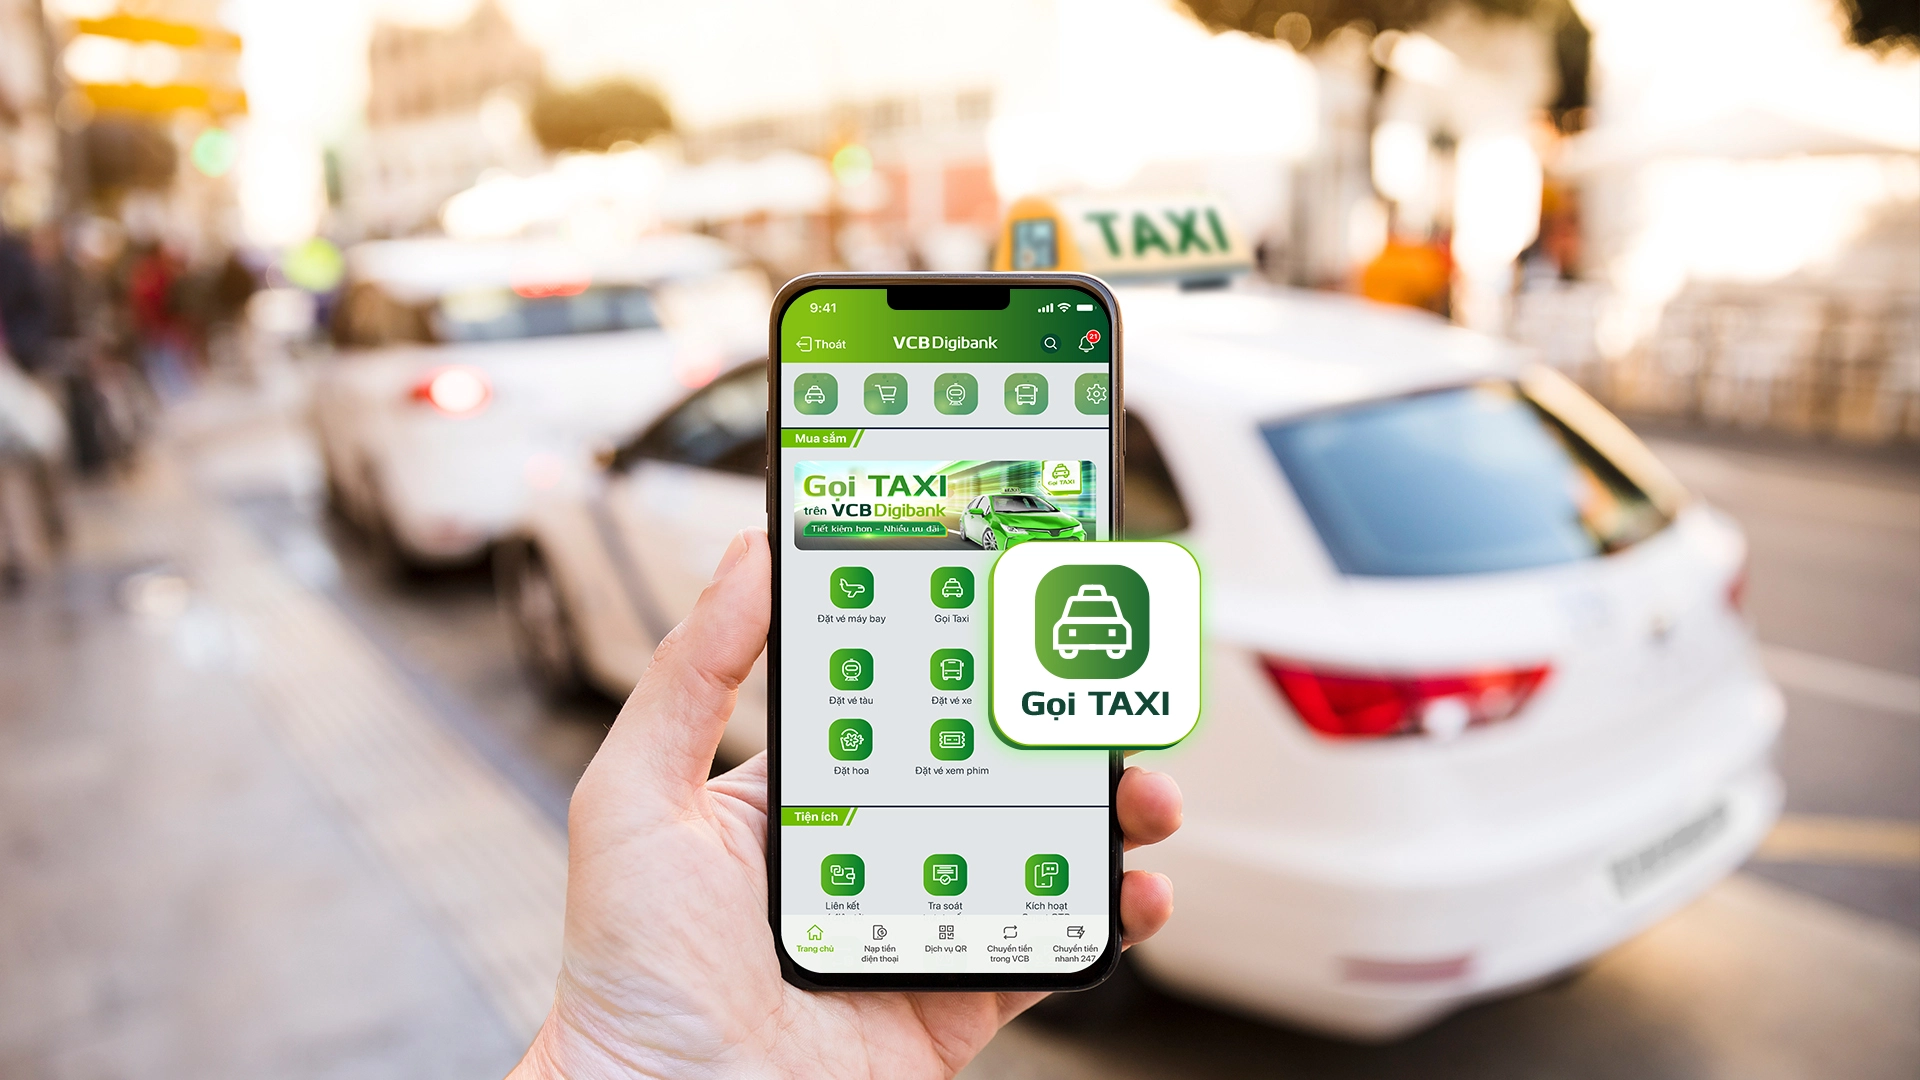 Gọi taxi qua ứng dụng ngân hàng và ví VNPAY: Tiện lợi, tối ưu chi phí - Ảnh 1.